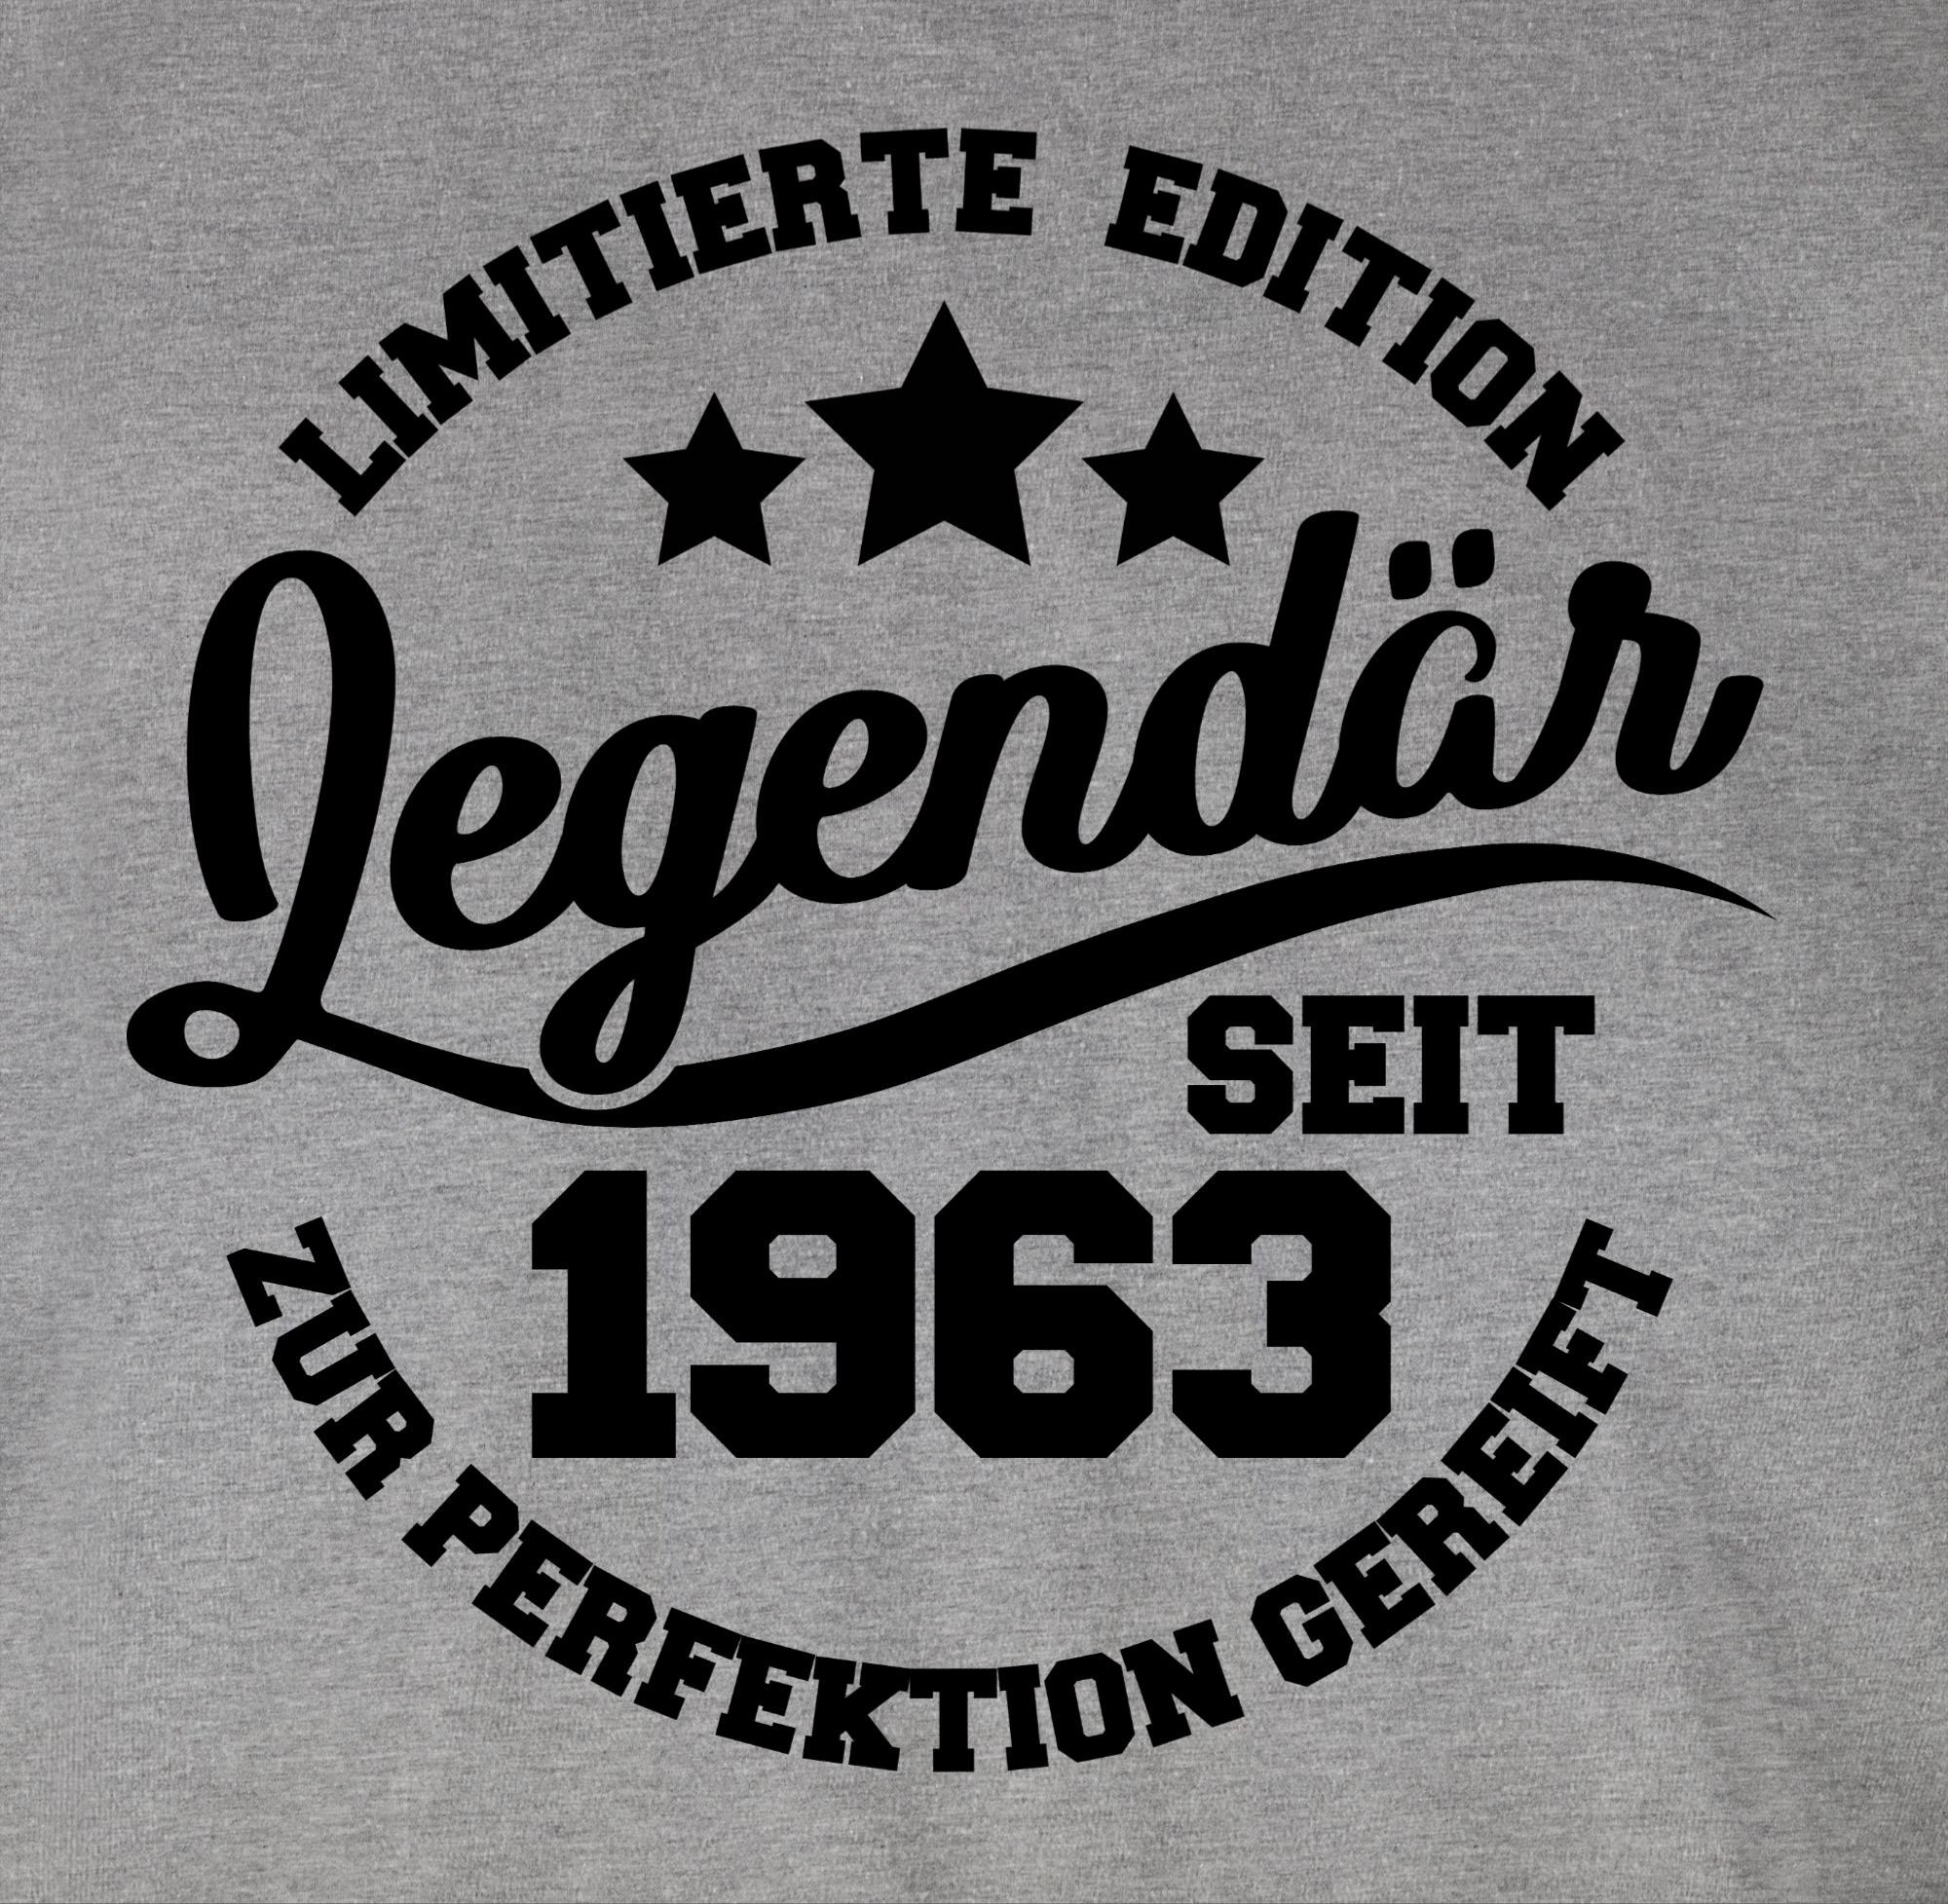 Shirtracer T-Shirt 1963 60. Grau Geburtstag Legendär seit 2 meliert - schwarz